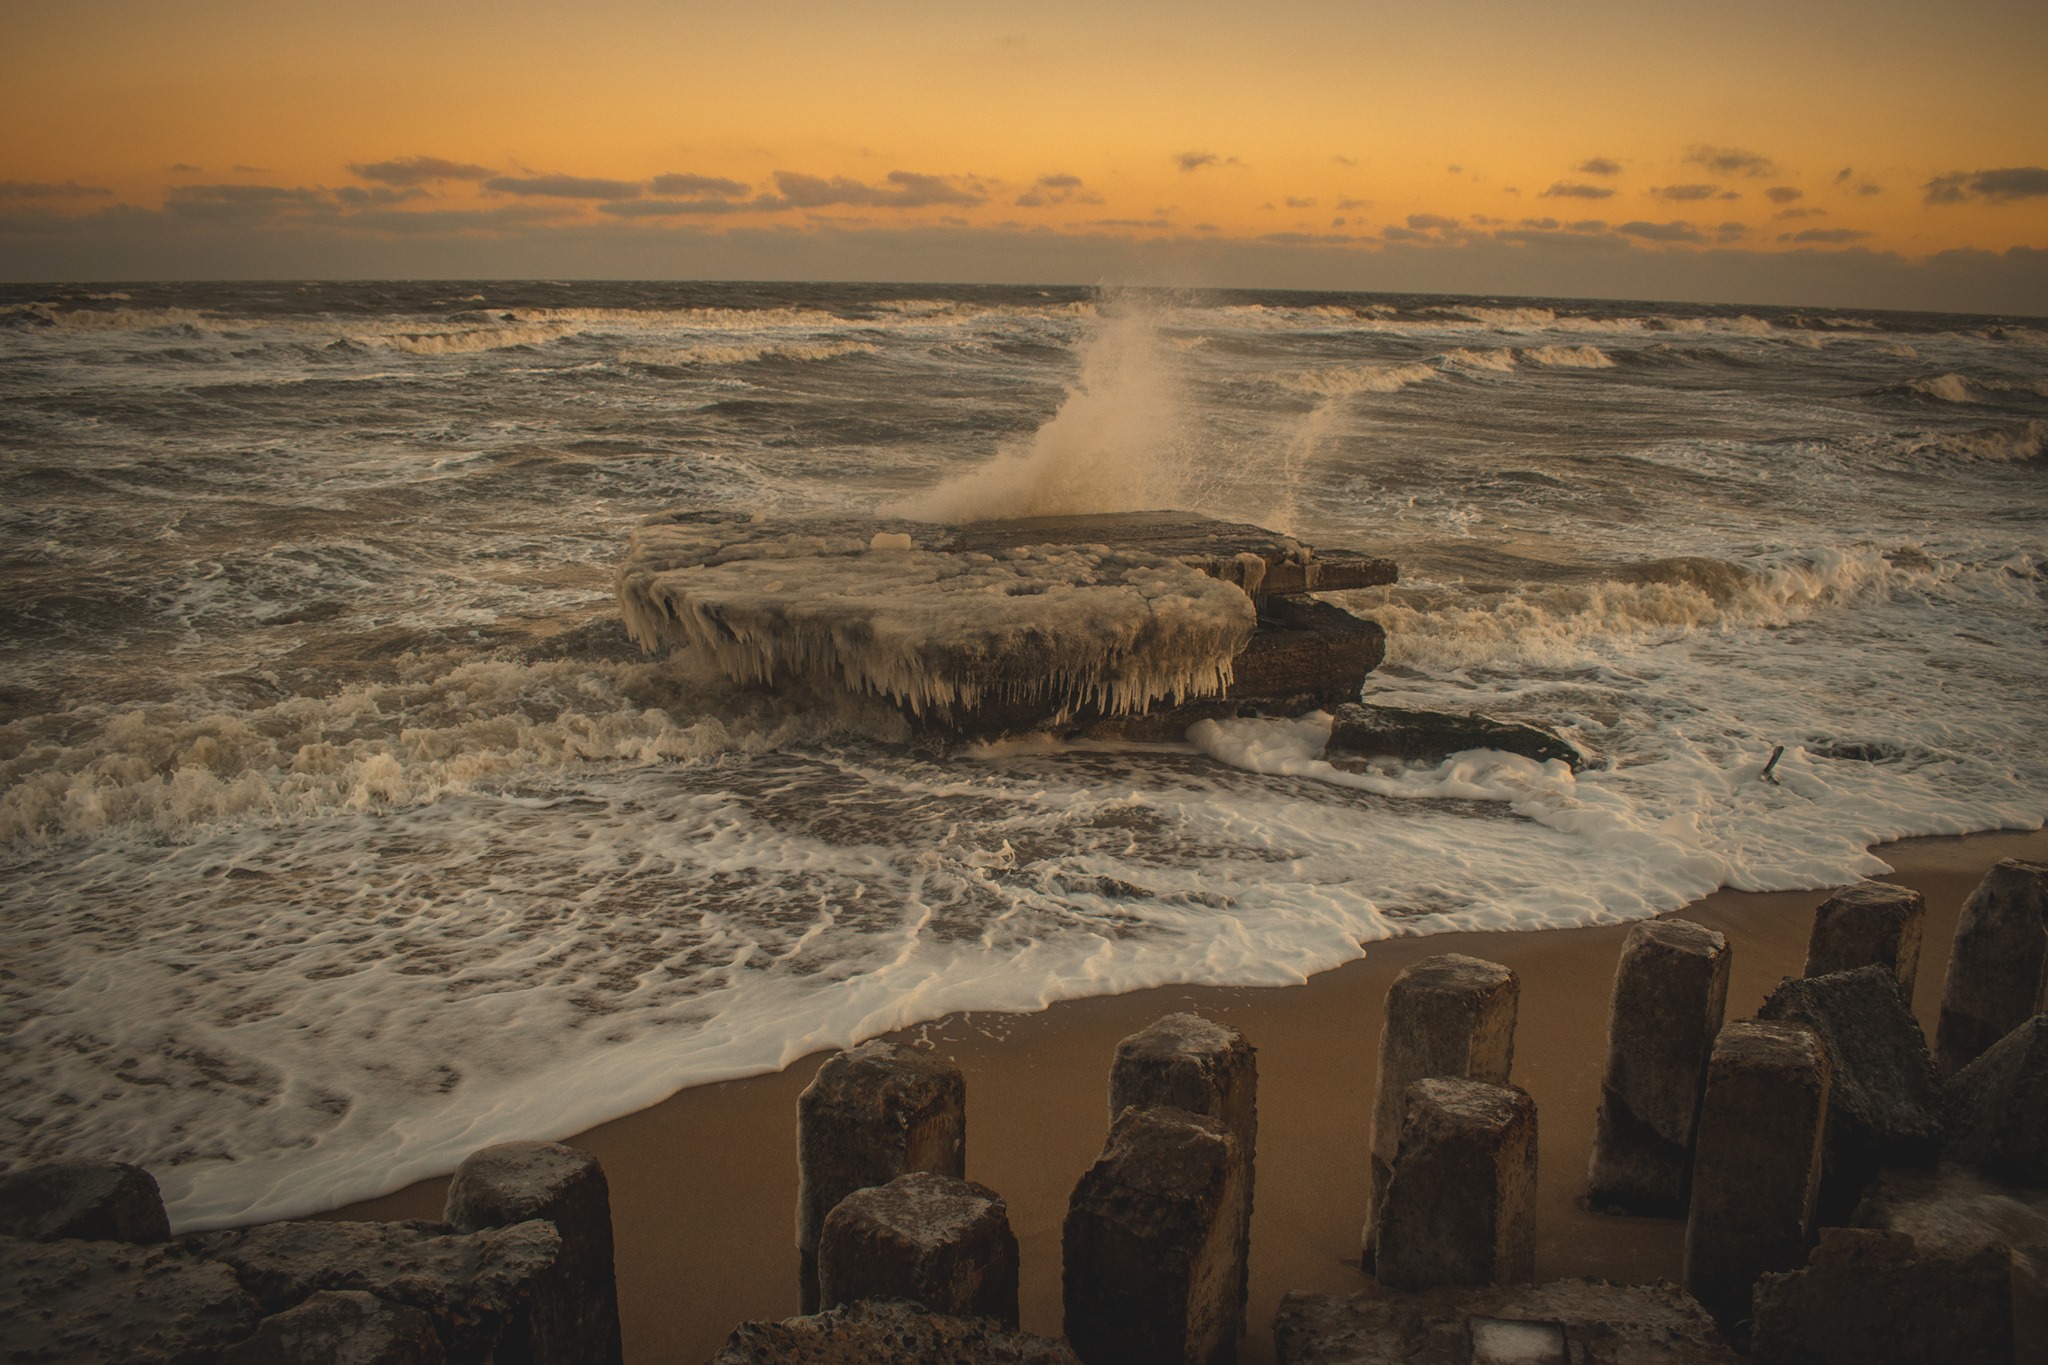 Заледеневший шторм: фотограф из Запорожья показала уникальные кадры Азовского побережья